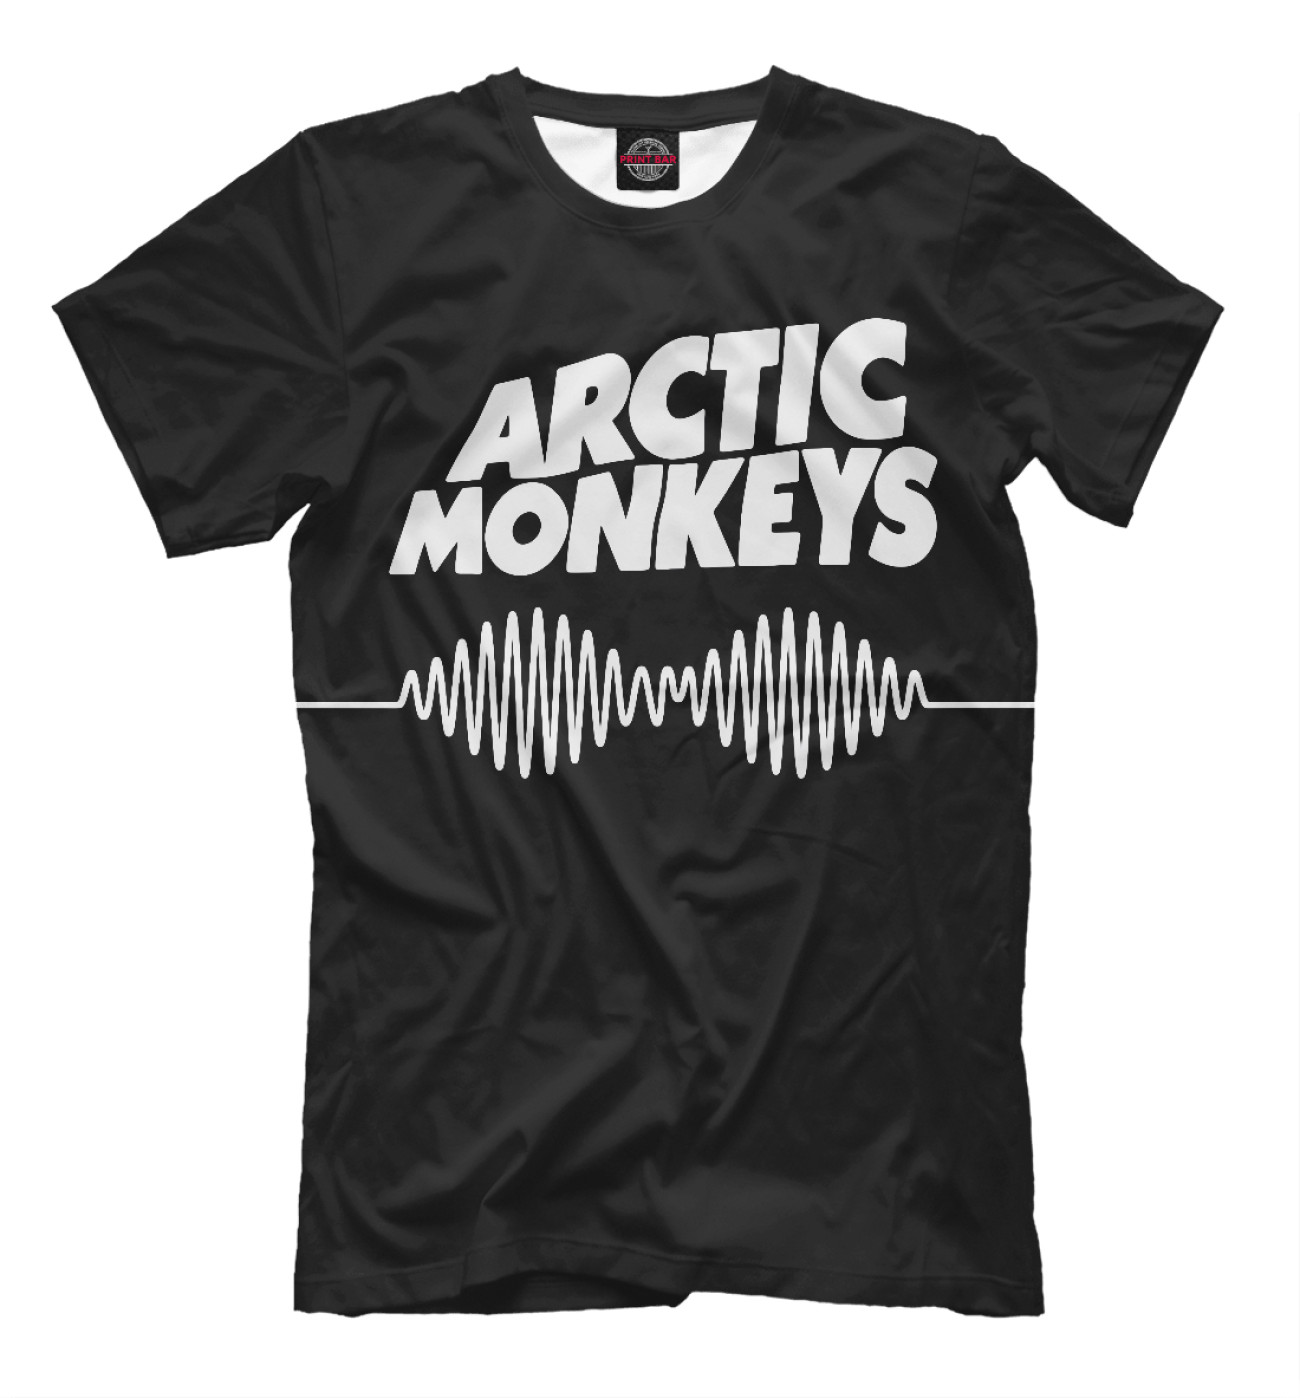 Мужская Футболка Arctic Monkeys, артикул: MZK-567757-fut-2